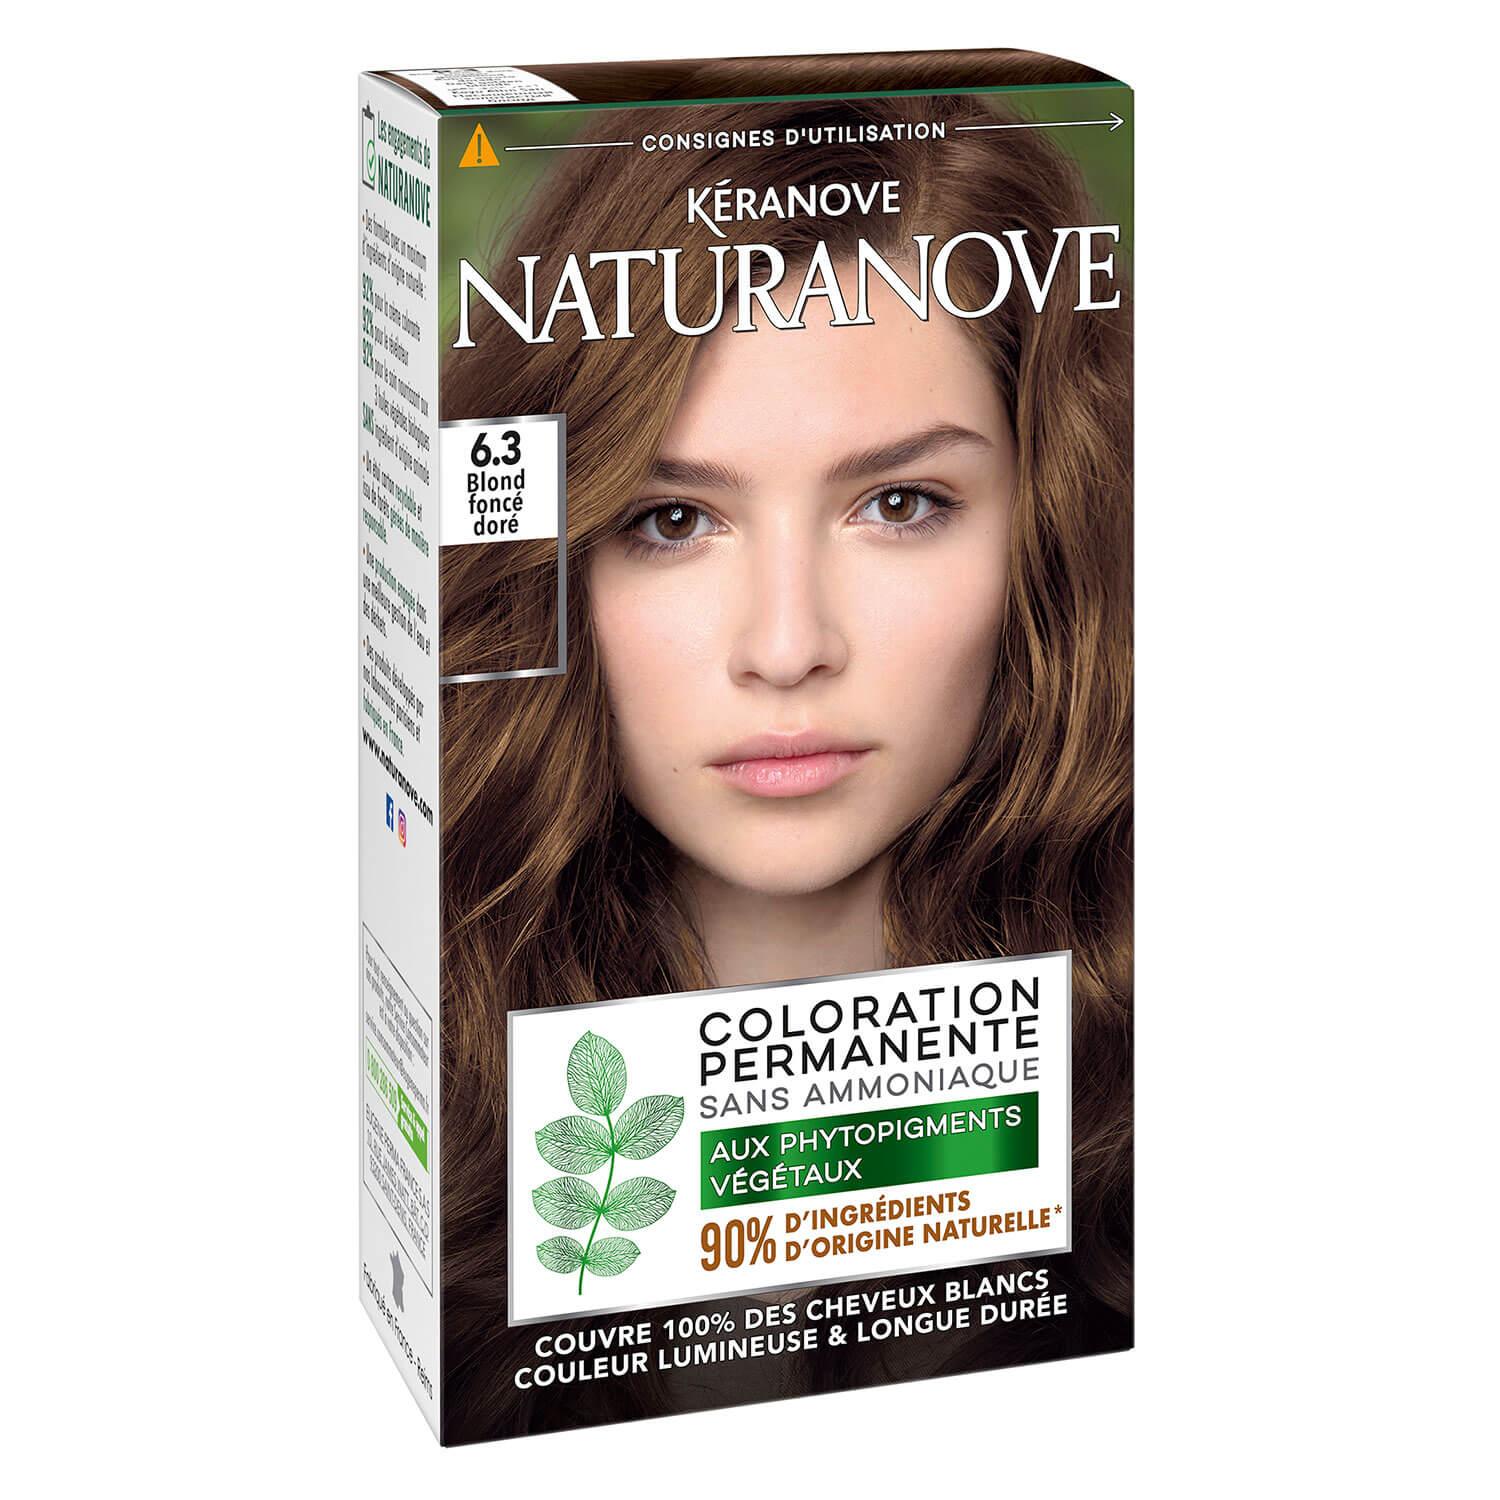 Naturanove - Coloration Permanente Blond Foncé Doré 6.3